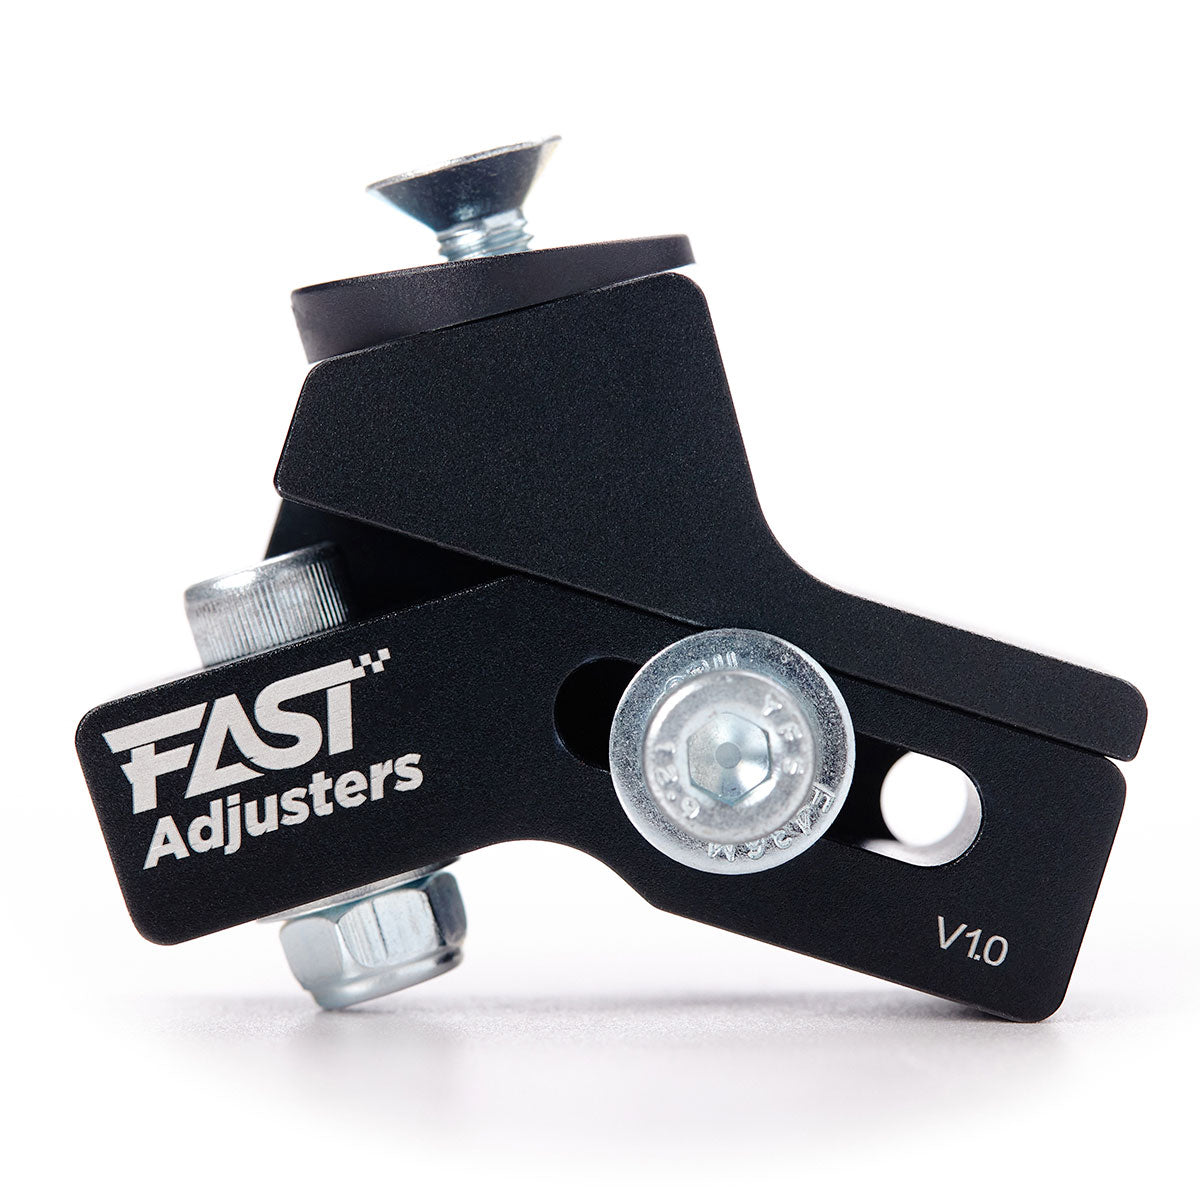 Fast Adjusters V1.0